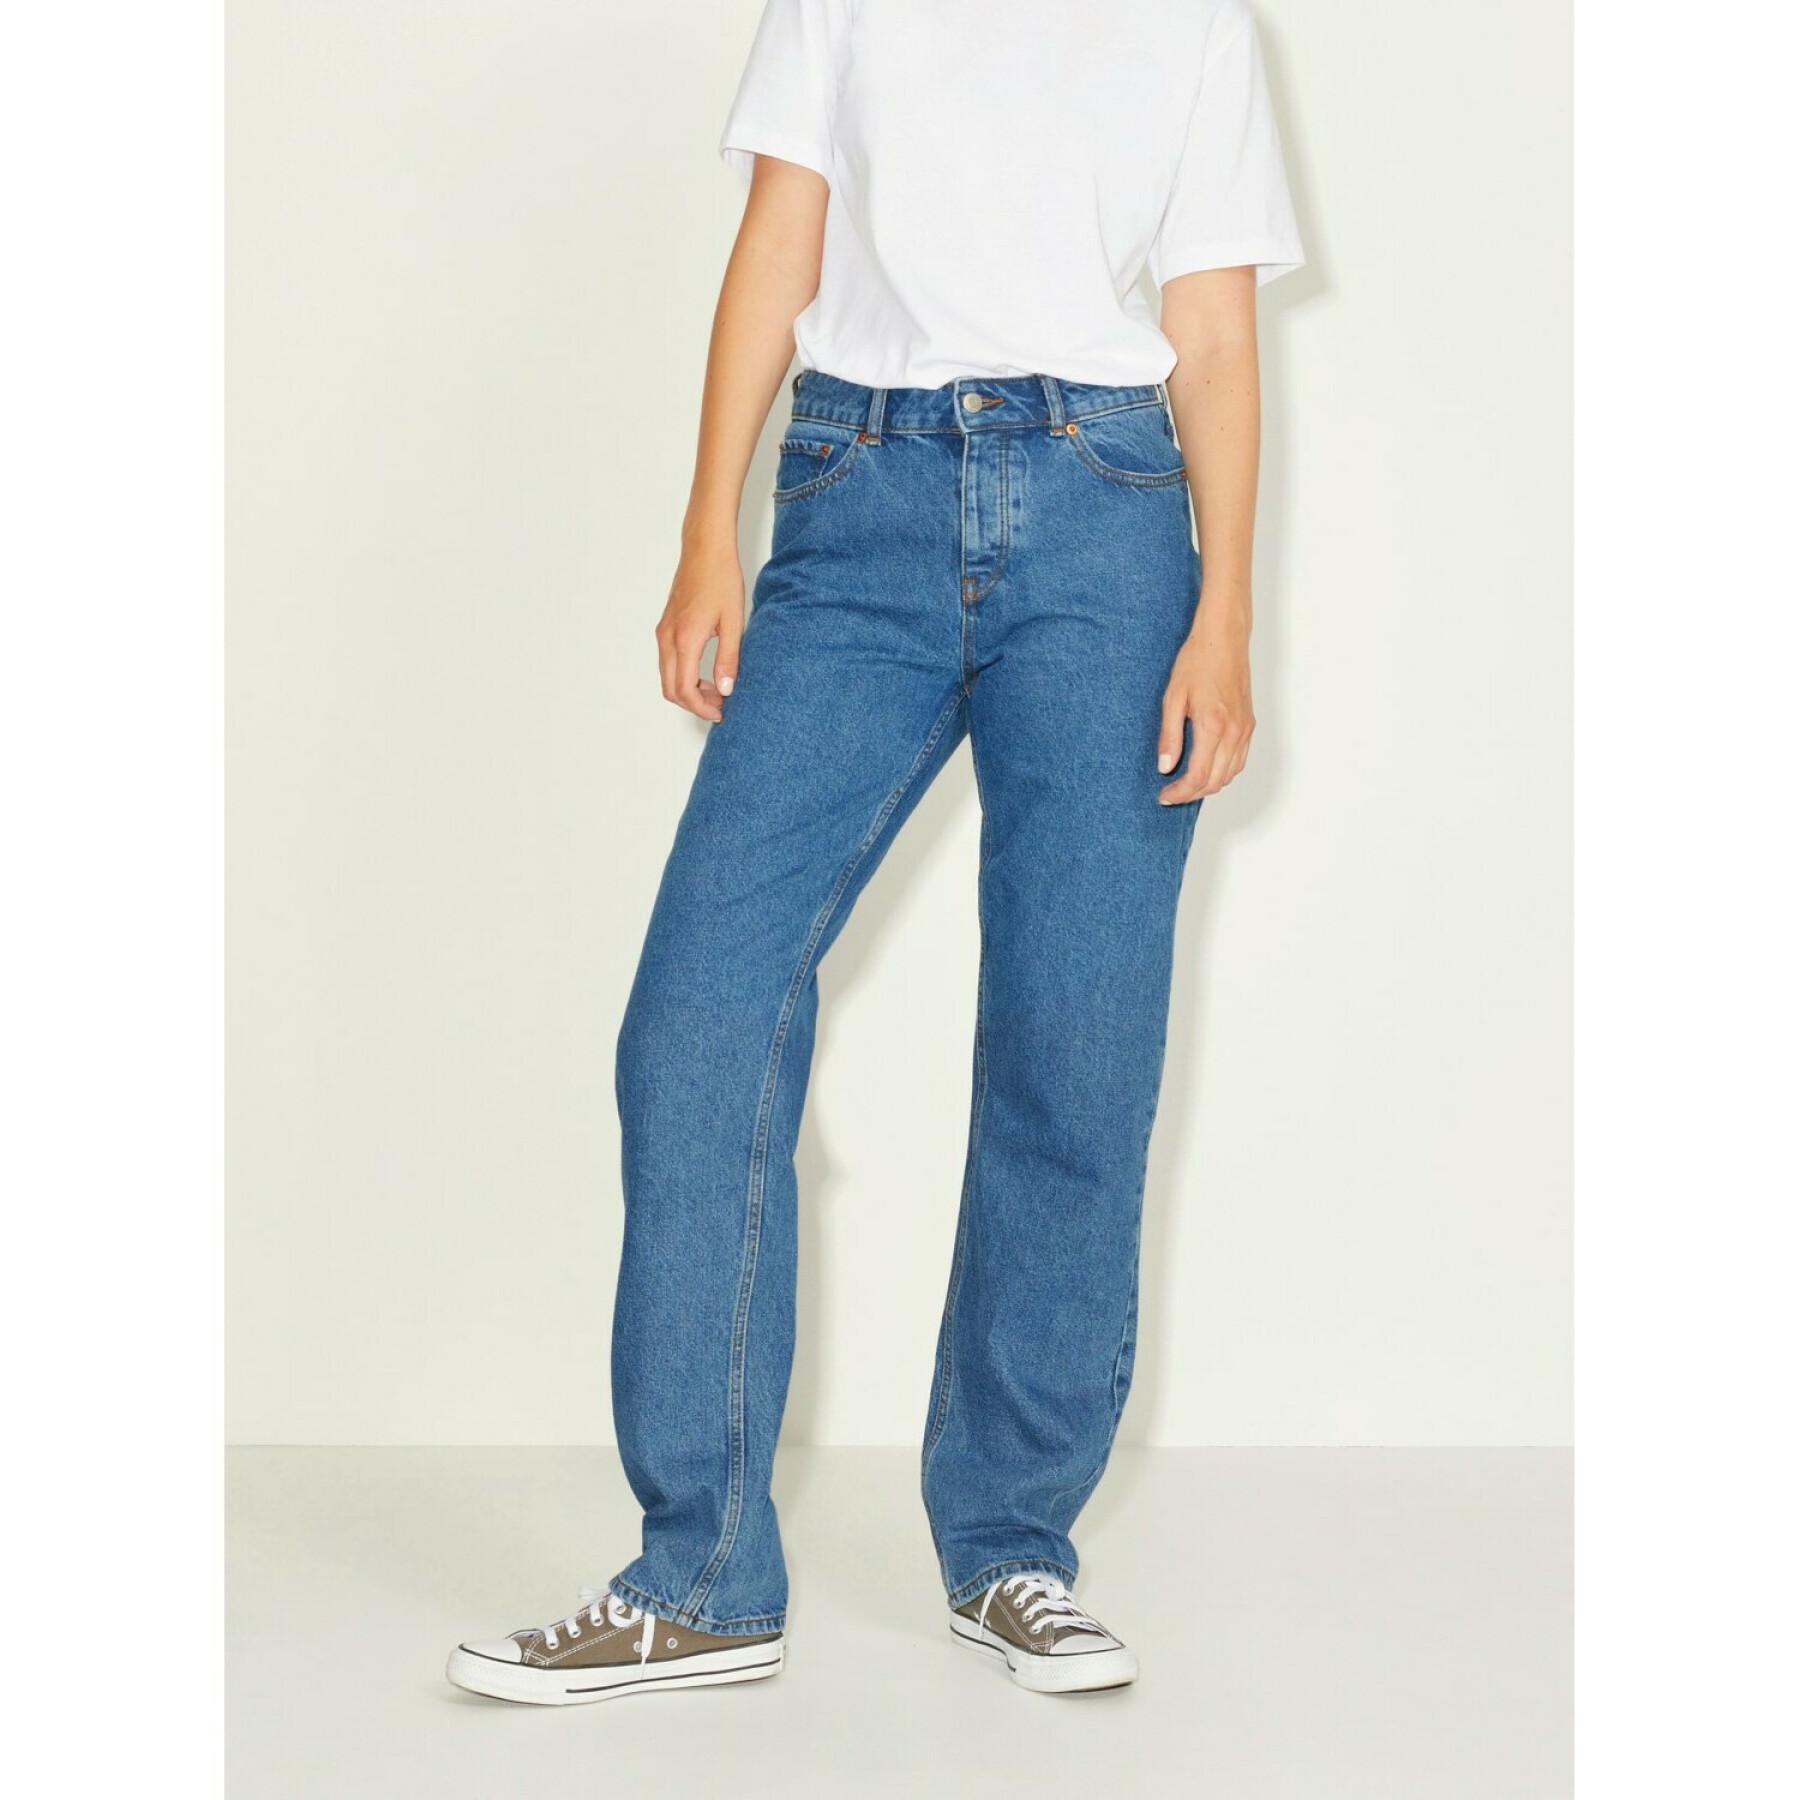 Rechte jeans voor dames JJXX seoul nr3002